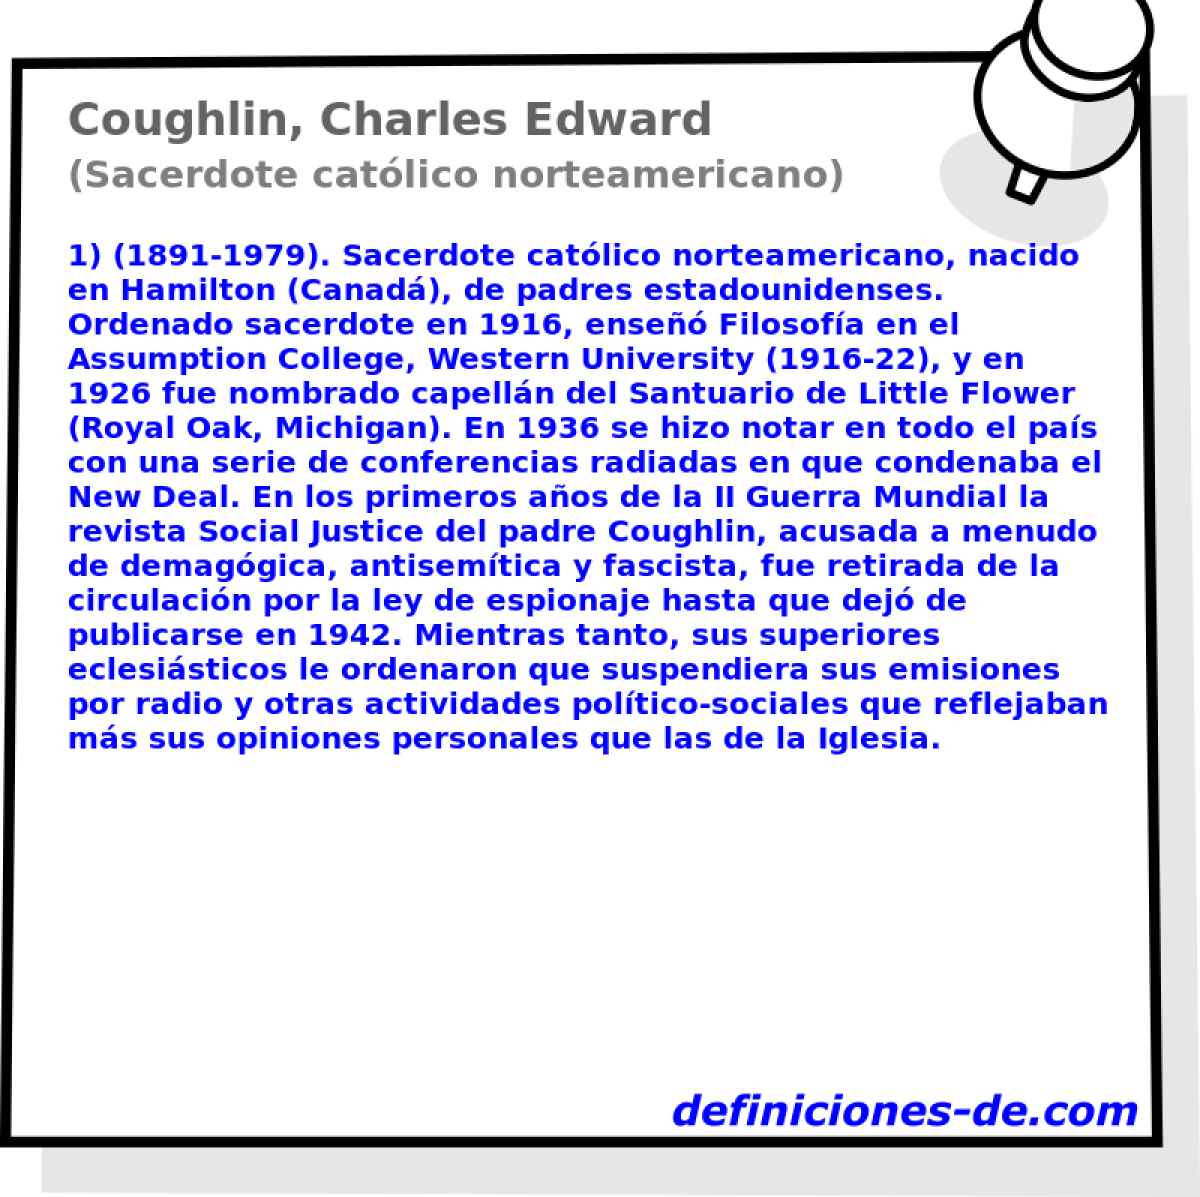 Coughlin, Charles Edward (Sacerdote catlico norteamericano)